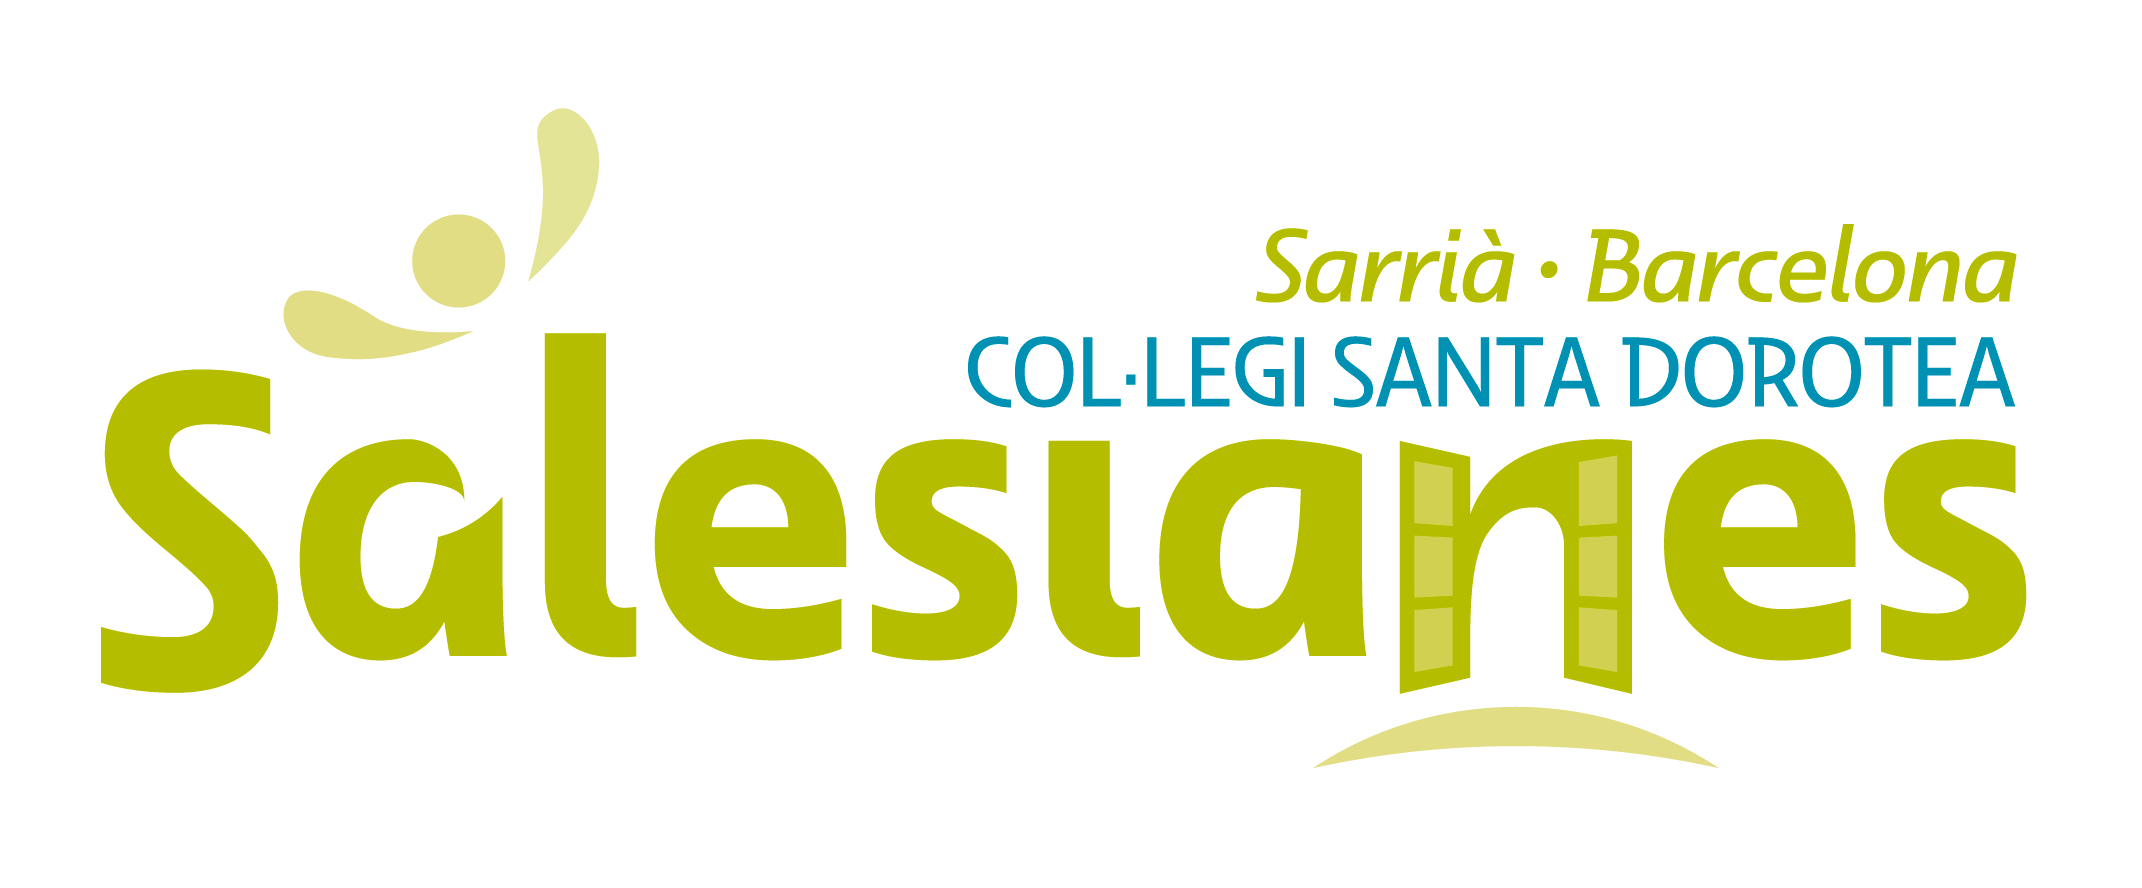 Col·legi Santa Dorotea – Sarrià